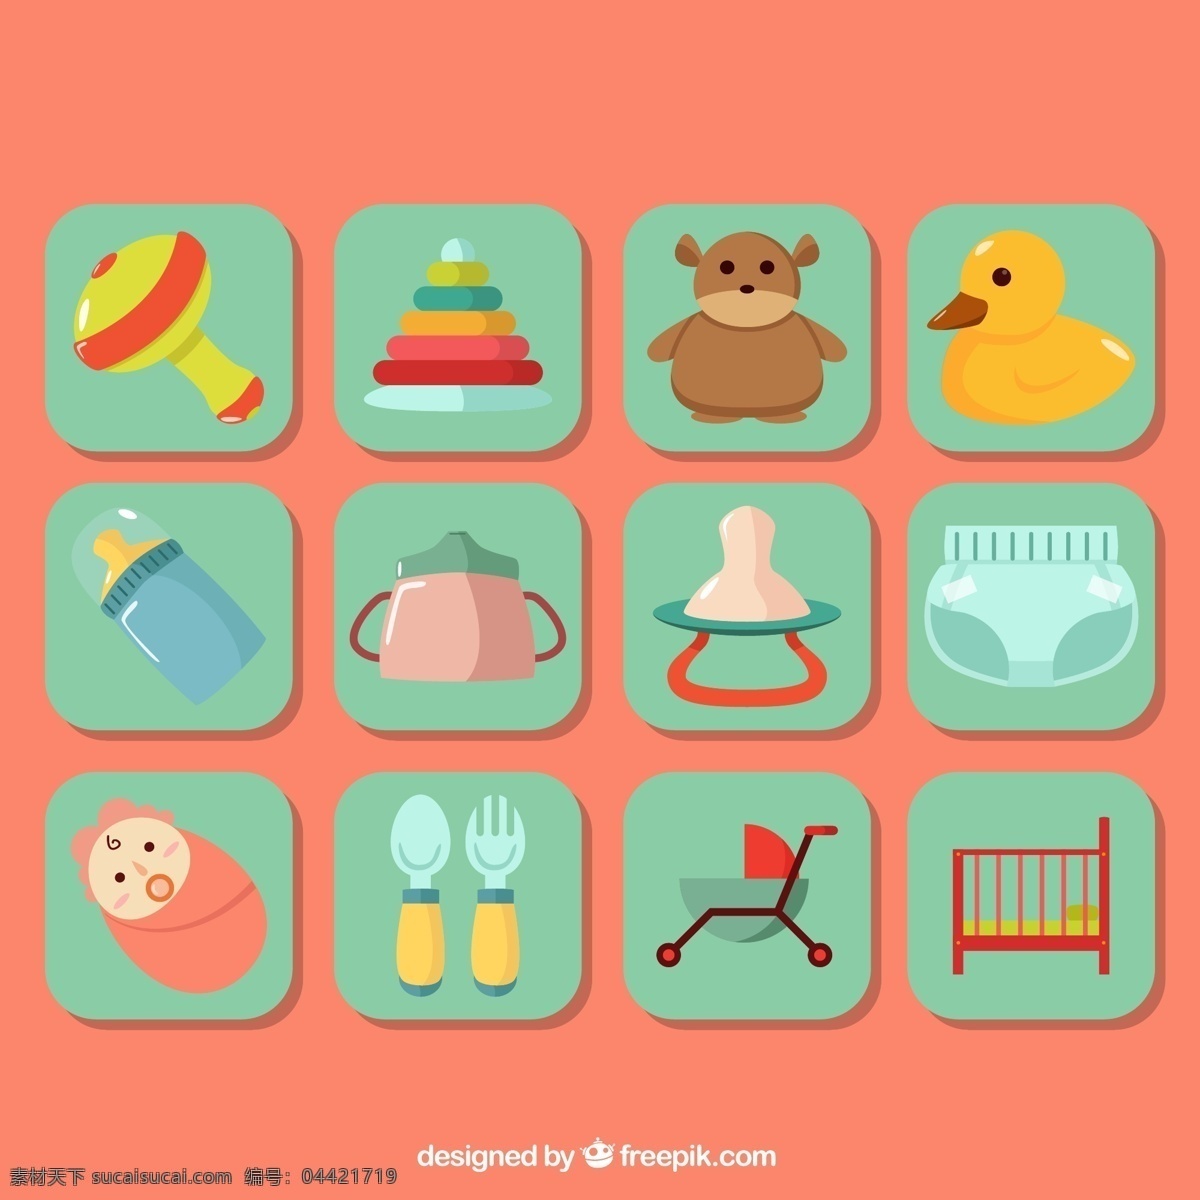 方形 婴儿用品 贴纸 图标 婴儿 用品 婴儿摇铃 玩具套环 玩偶熊 鸭子玩偶 生活用品 生活百科